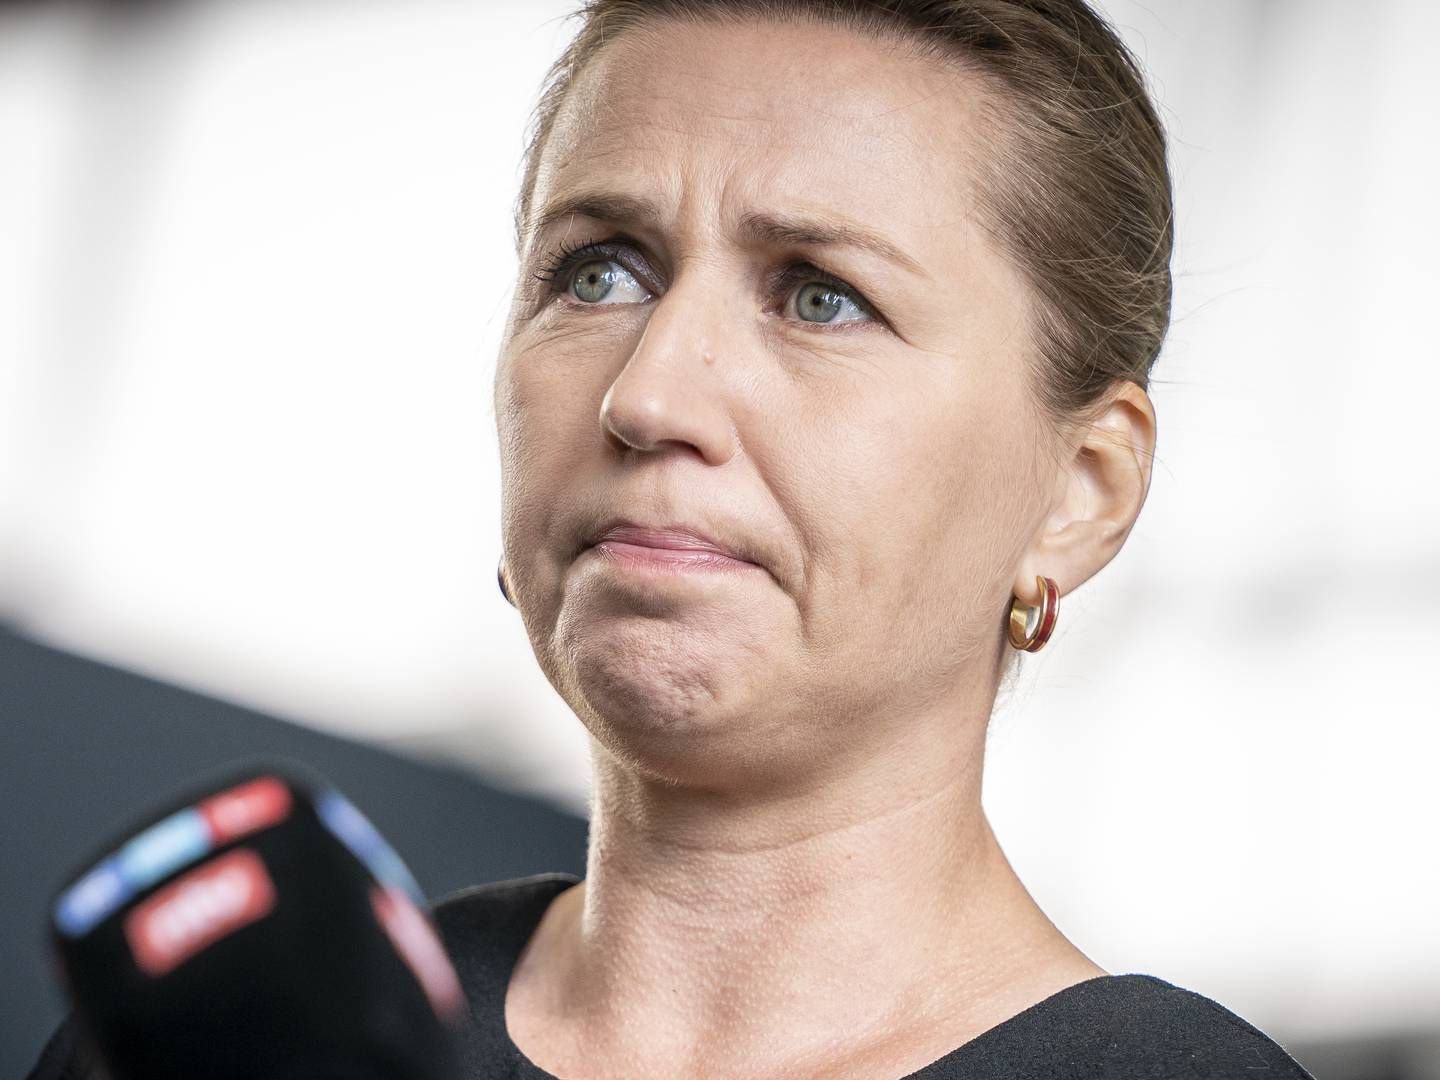 Statsminister Mette Frederiksen (S) får tildelt en næse. | Foto: Mads Claus Rasmussen